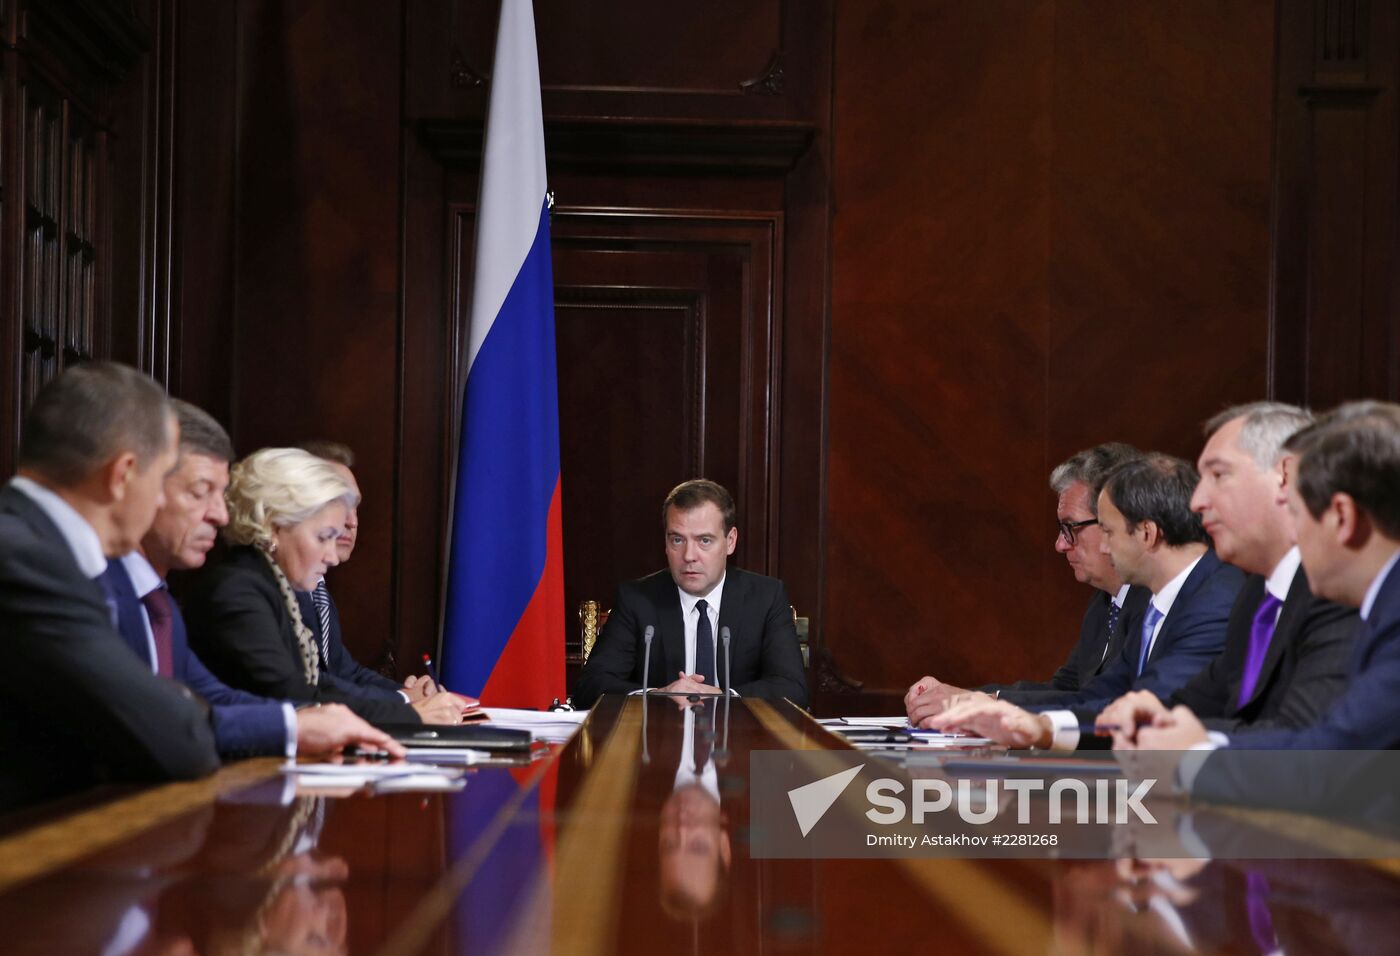 Dmitry Medvedev meets with his deputies